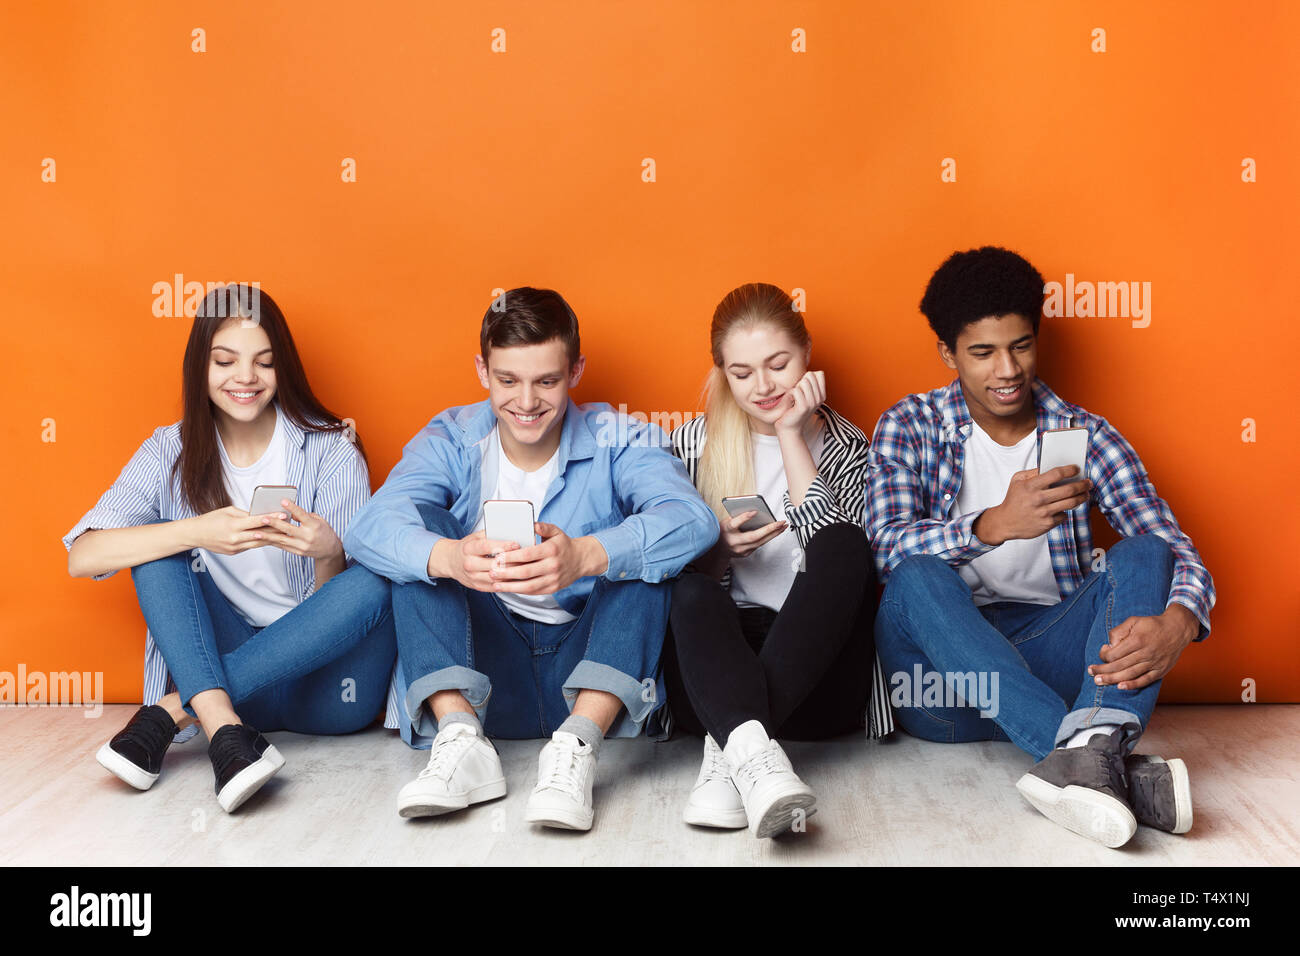 Gadget sucht. Jugendliche mit Smartphones, orange Wand Stockfoto